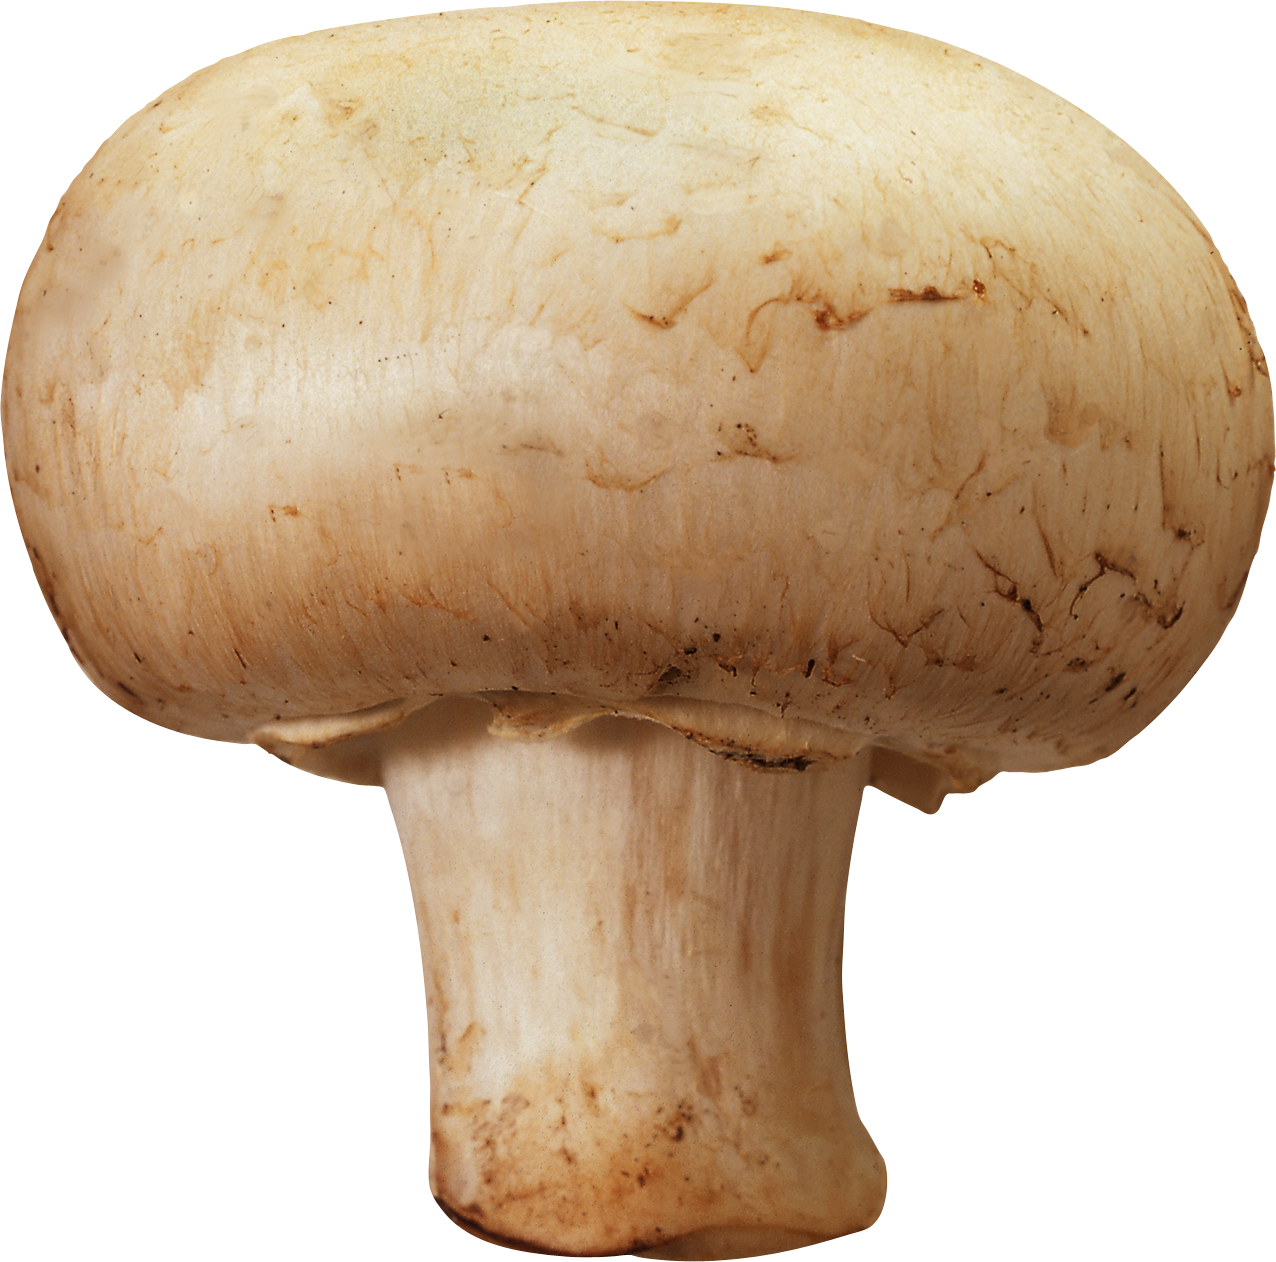 PNG File Name: Mushroom PlusP